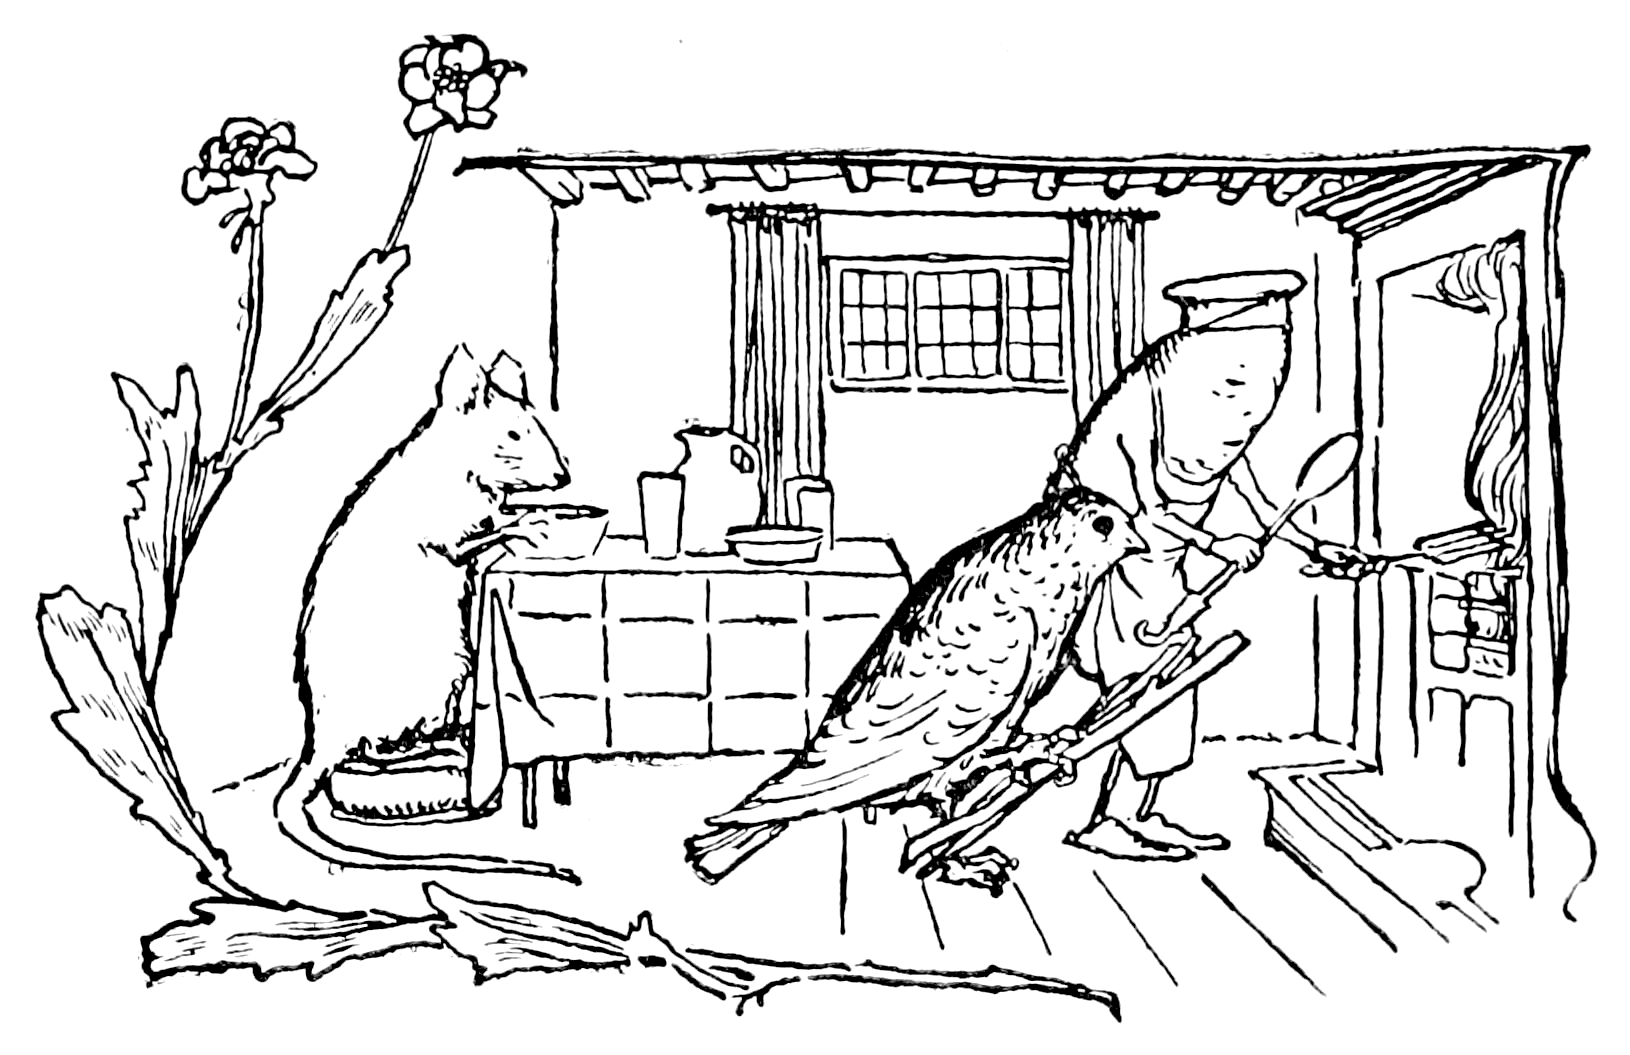 Το πουλί, το ποντίκι και το λουκάνικο κάνουν τις δουλειές του σπιτιού (Σχέδιο του Robert Anning Bell από έκδοση της συλλογής του 1912)